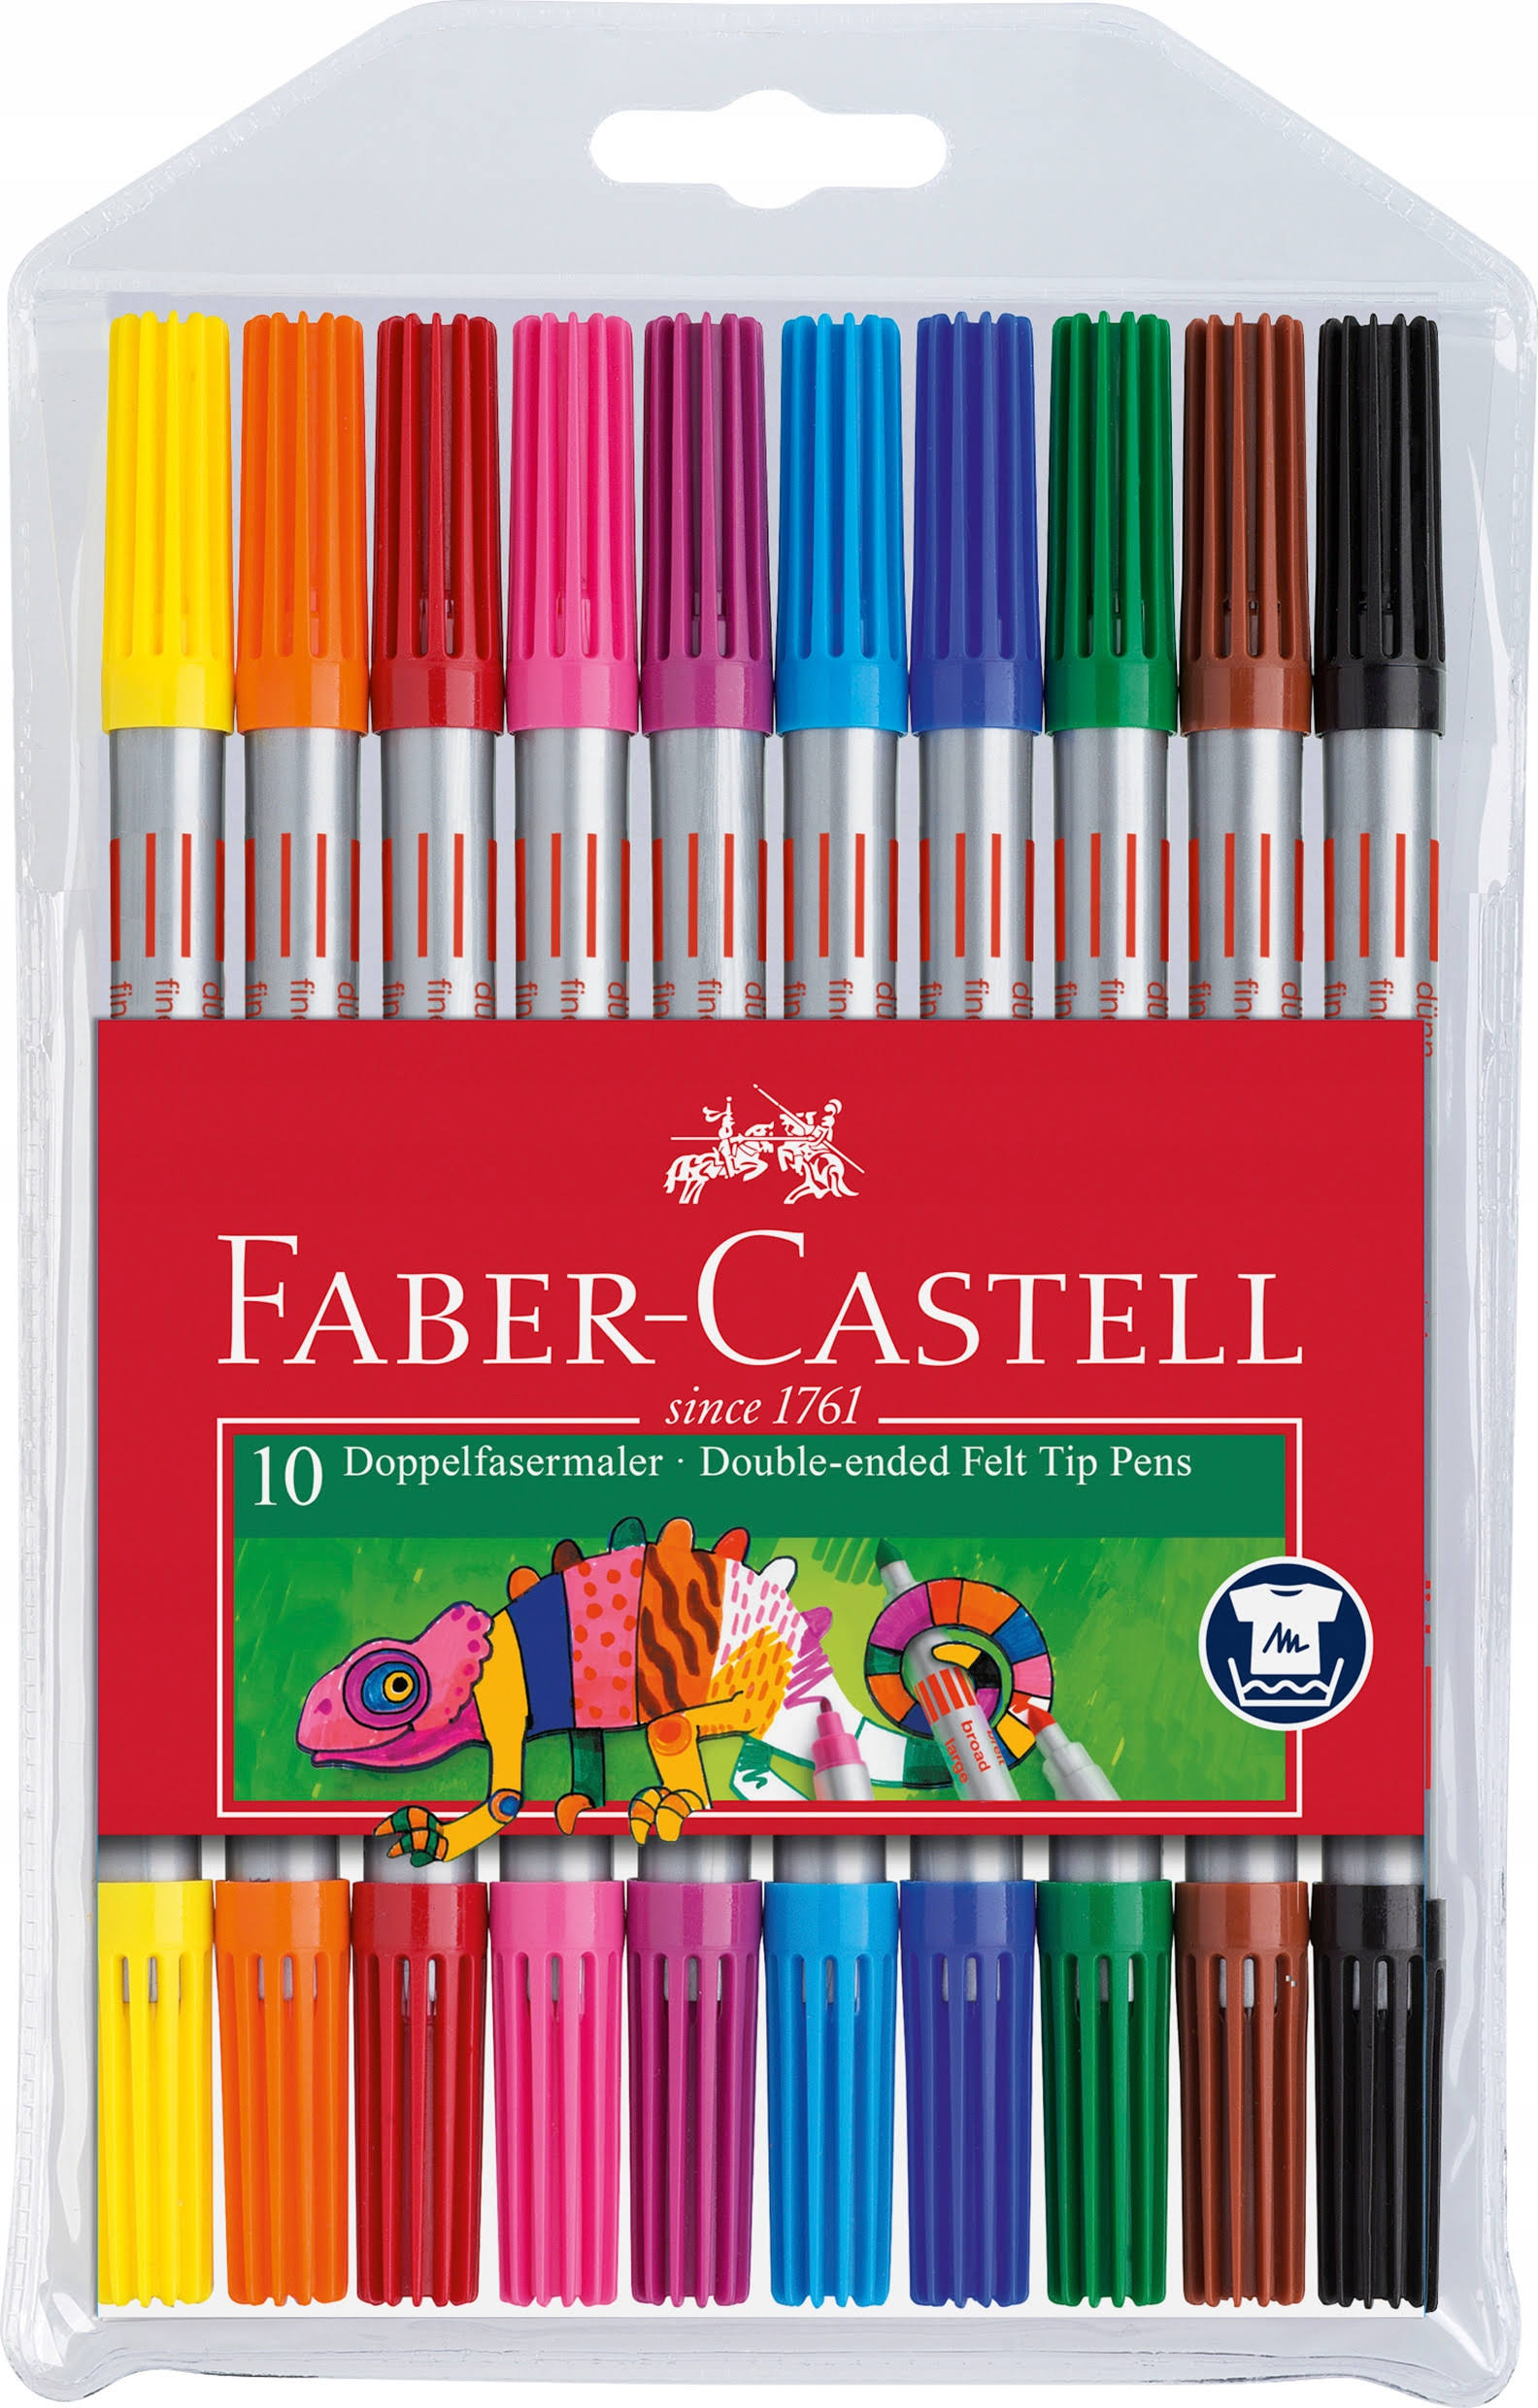 Faber-Castell Double Ended Felt Tip Pens - 10 Pack